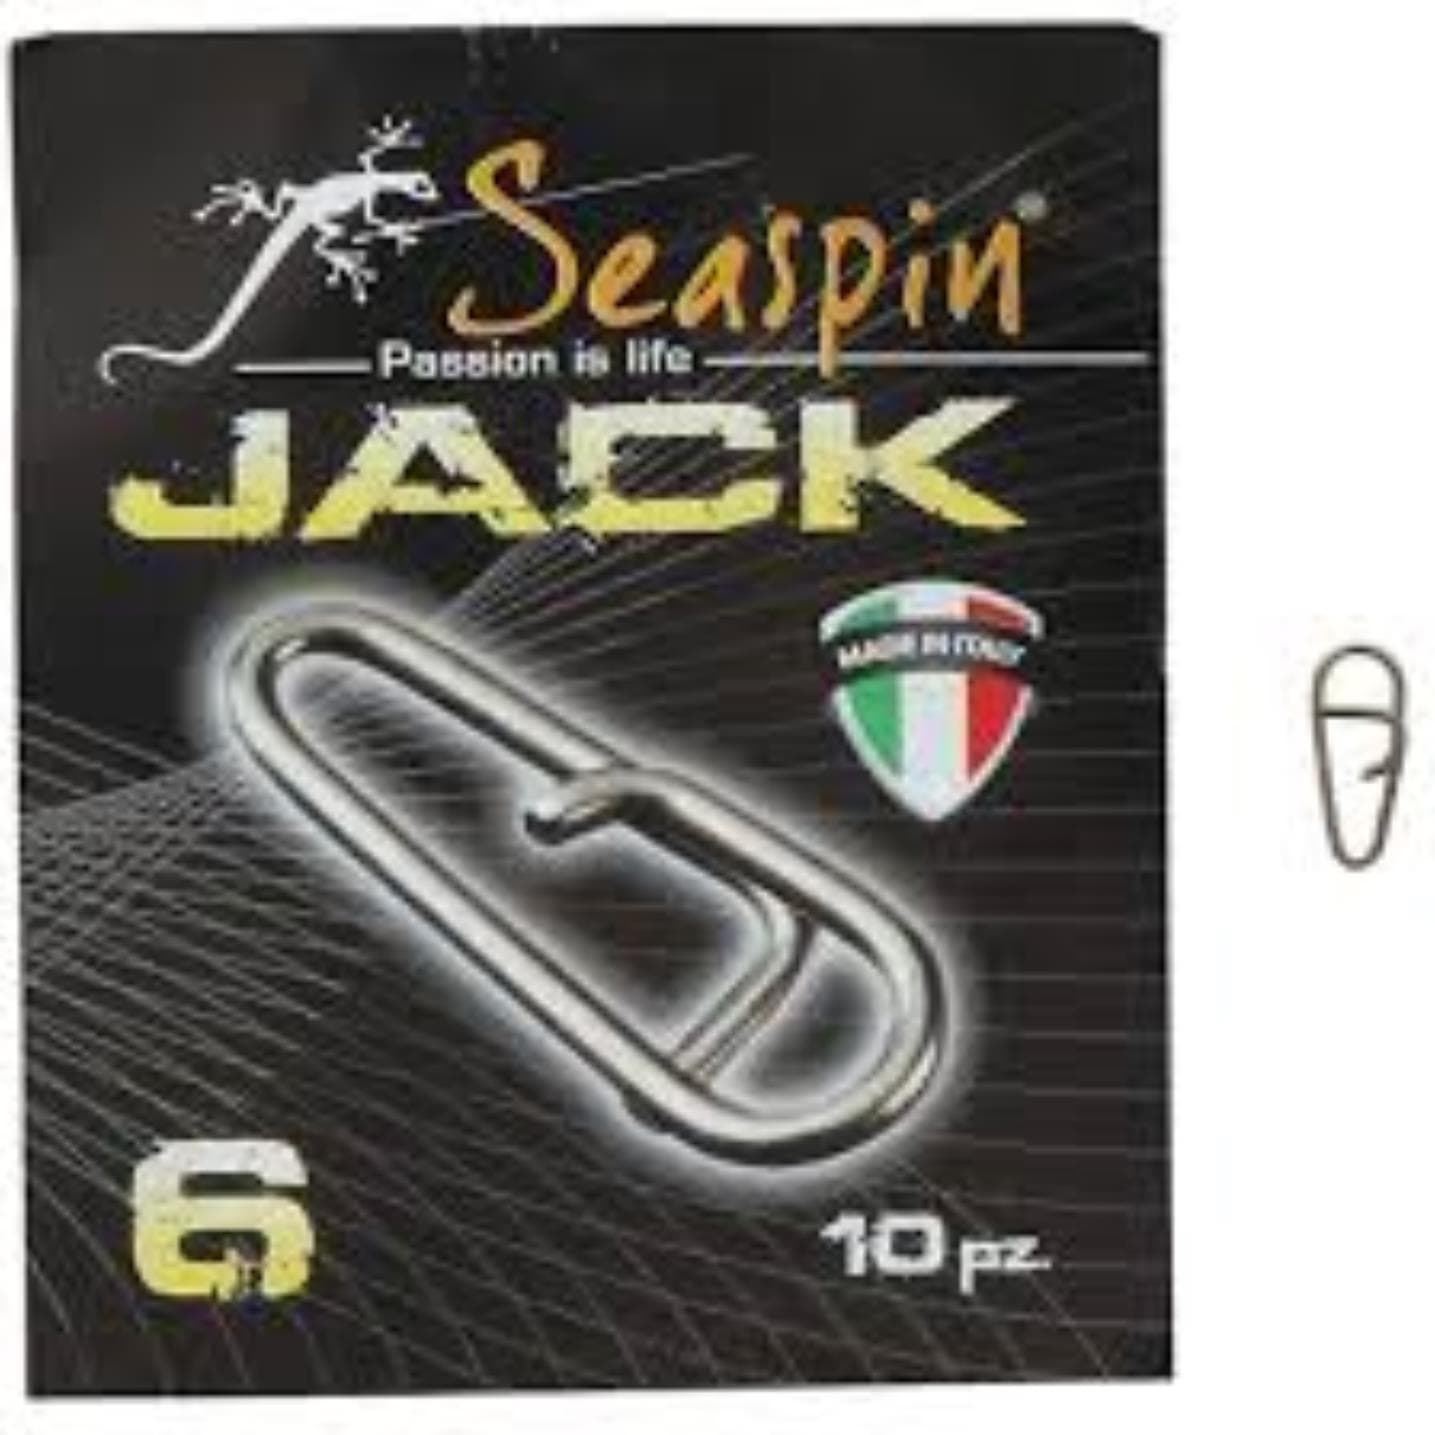 SEASPIN JACK Fast Links Conectores para SEÑUELOS - Imagen 1